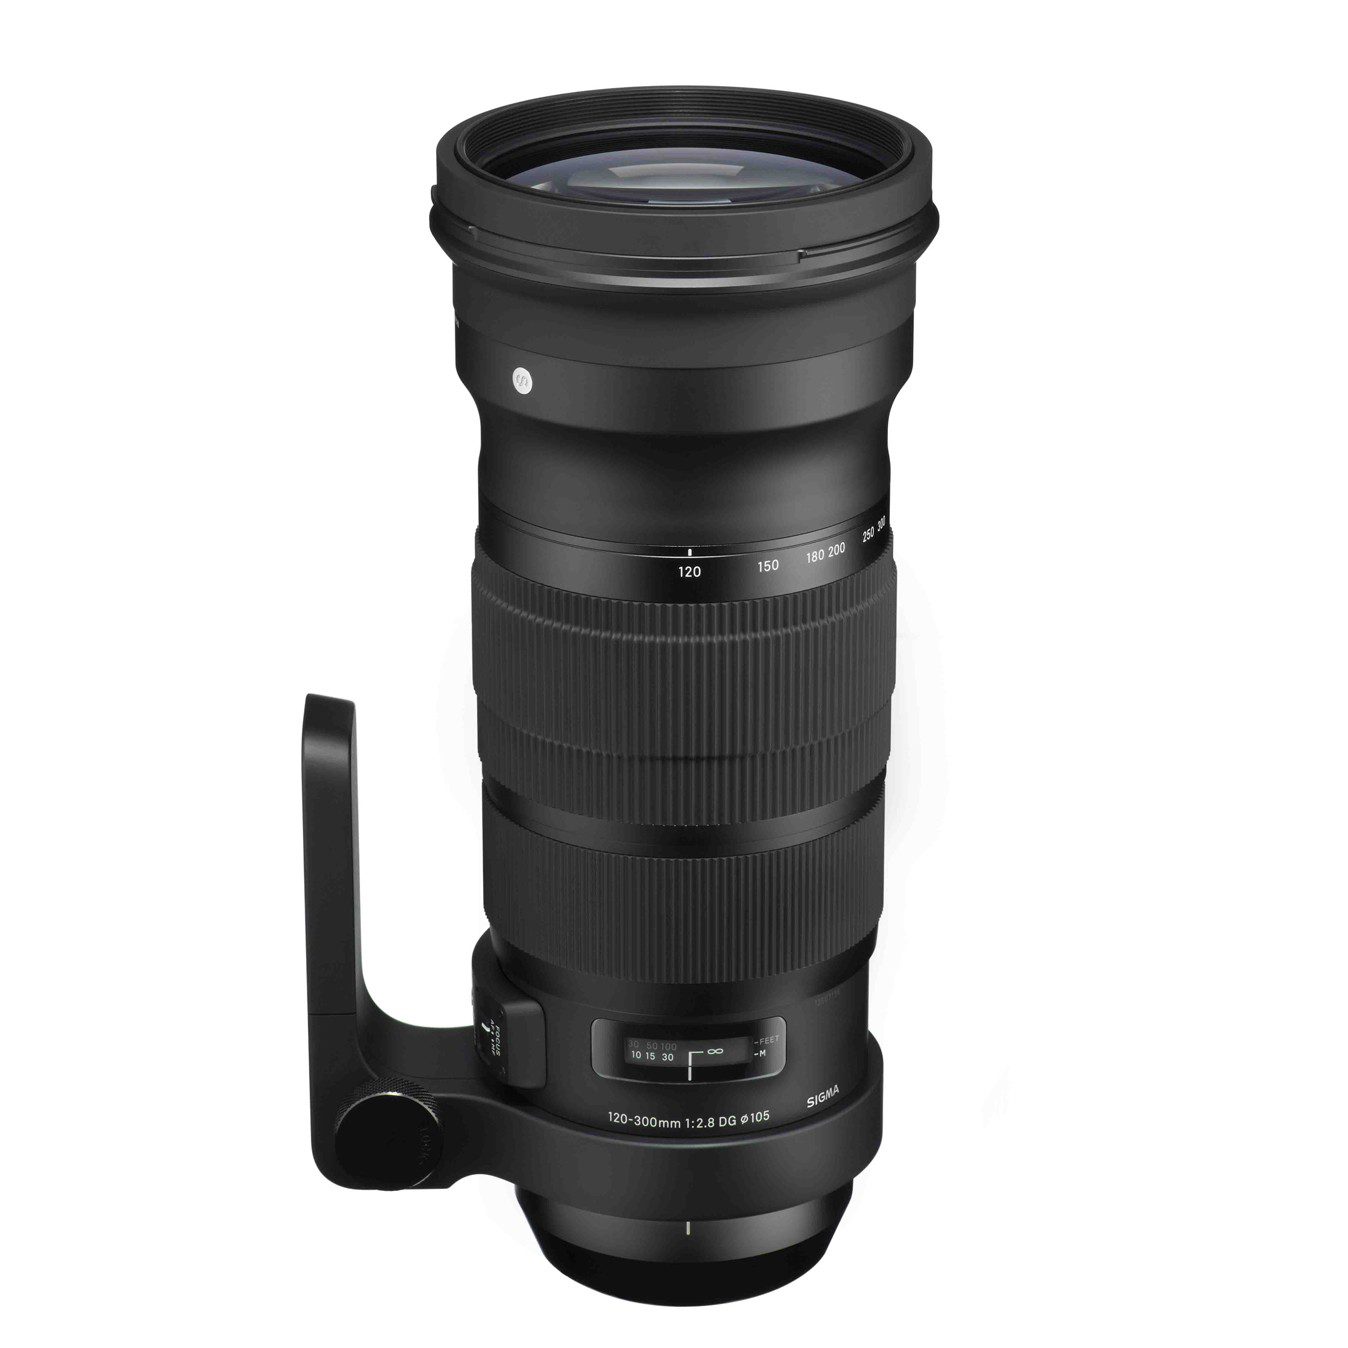 Sigma 120-300mm ƒ/2.8 DG OS HSM S lens Review